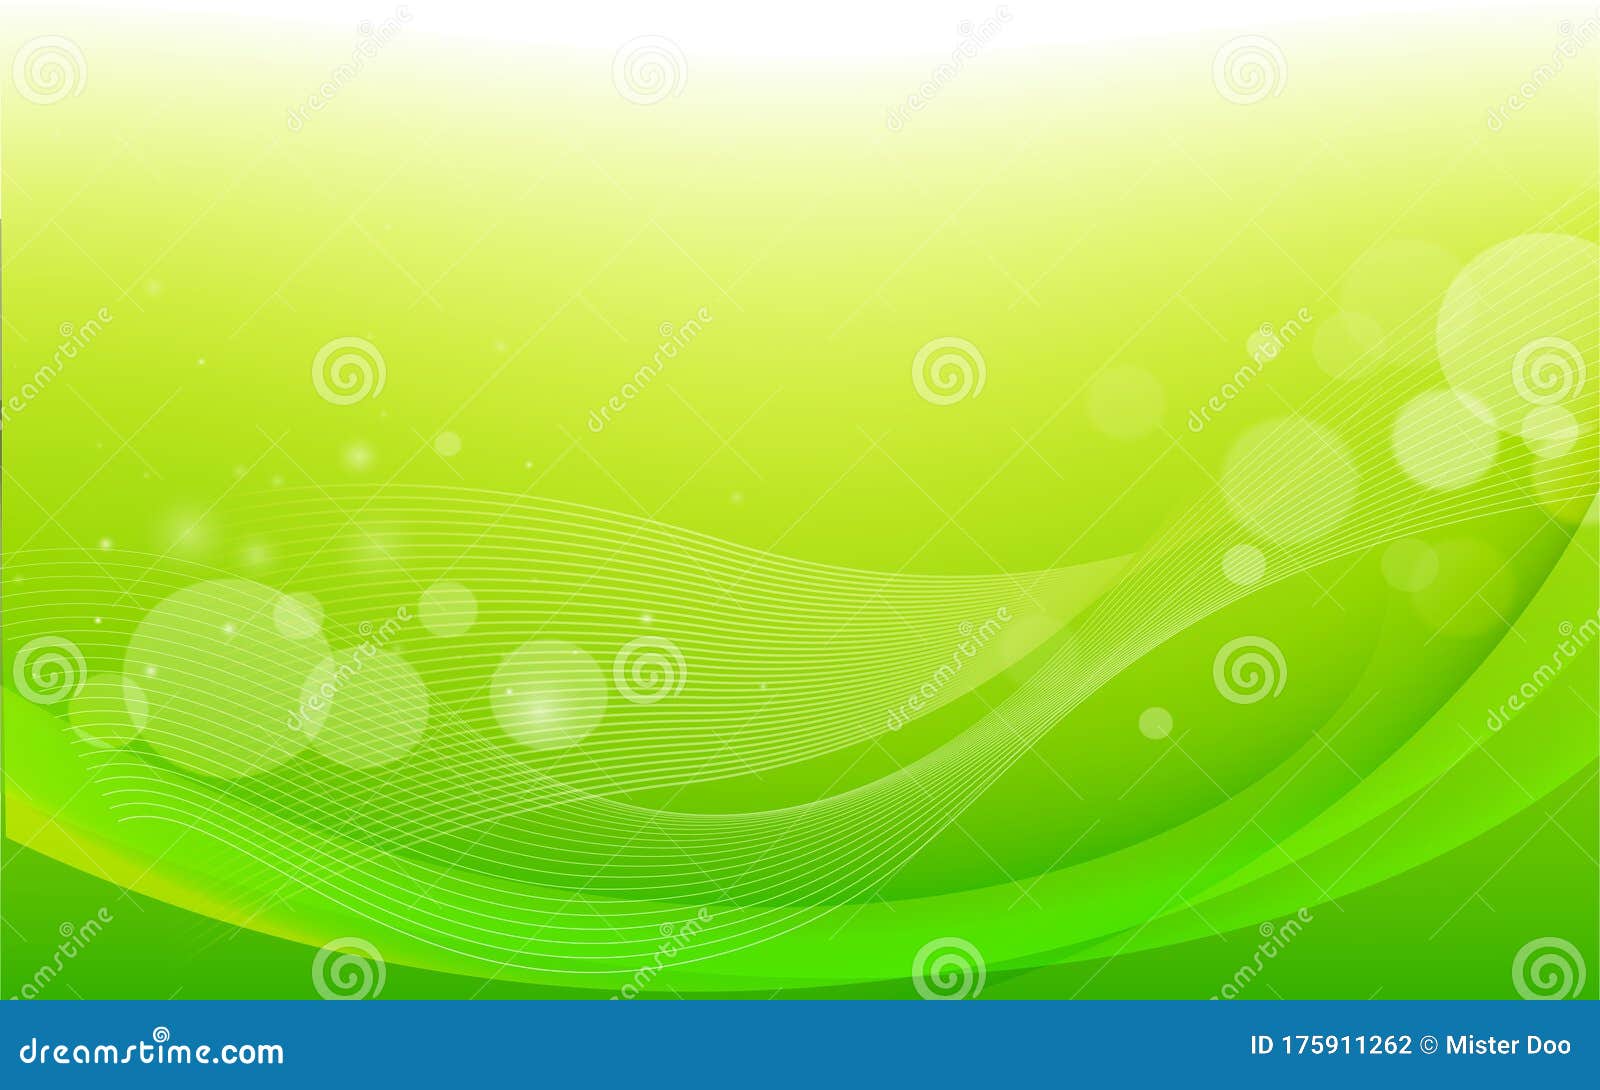 Nền tảng trừu tượng màu xanh (Green abstract background): Độc đáo, sáng tạo và màu sắc rực rỡ, đó là những gì mà nền tảng trừu tượng màu xanh có thể mang lại cho bạn. Với hàng loạt hình nền đẹp và ấn tượng, bạn sẽ không bao giờ tìm được những hình ảnh tuyệt vời hơn để làm nền cho thiết bị của mình. Hãy nhấn vào xem để khám phá thêm rất nhiều điều thú vị đang chờ bạn!